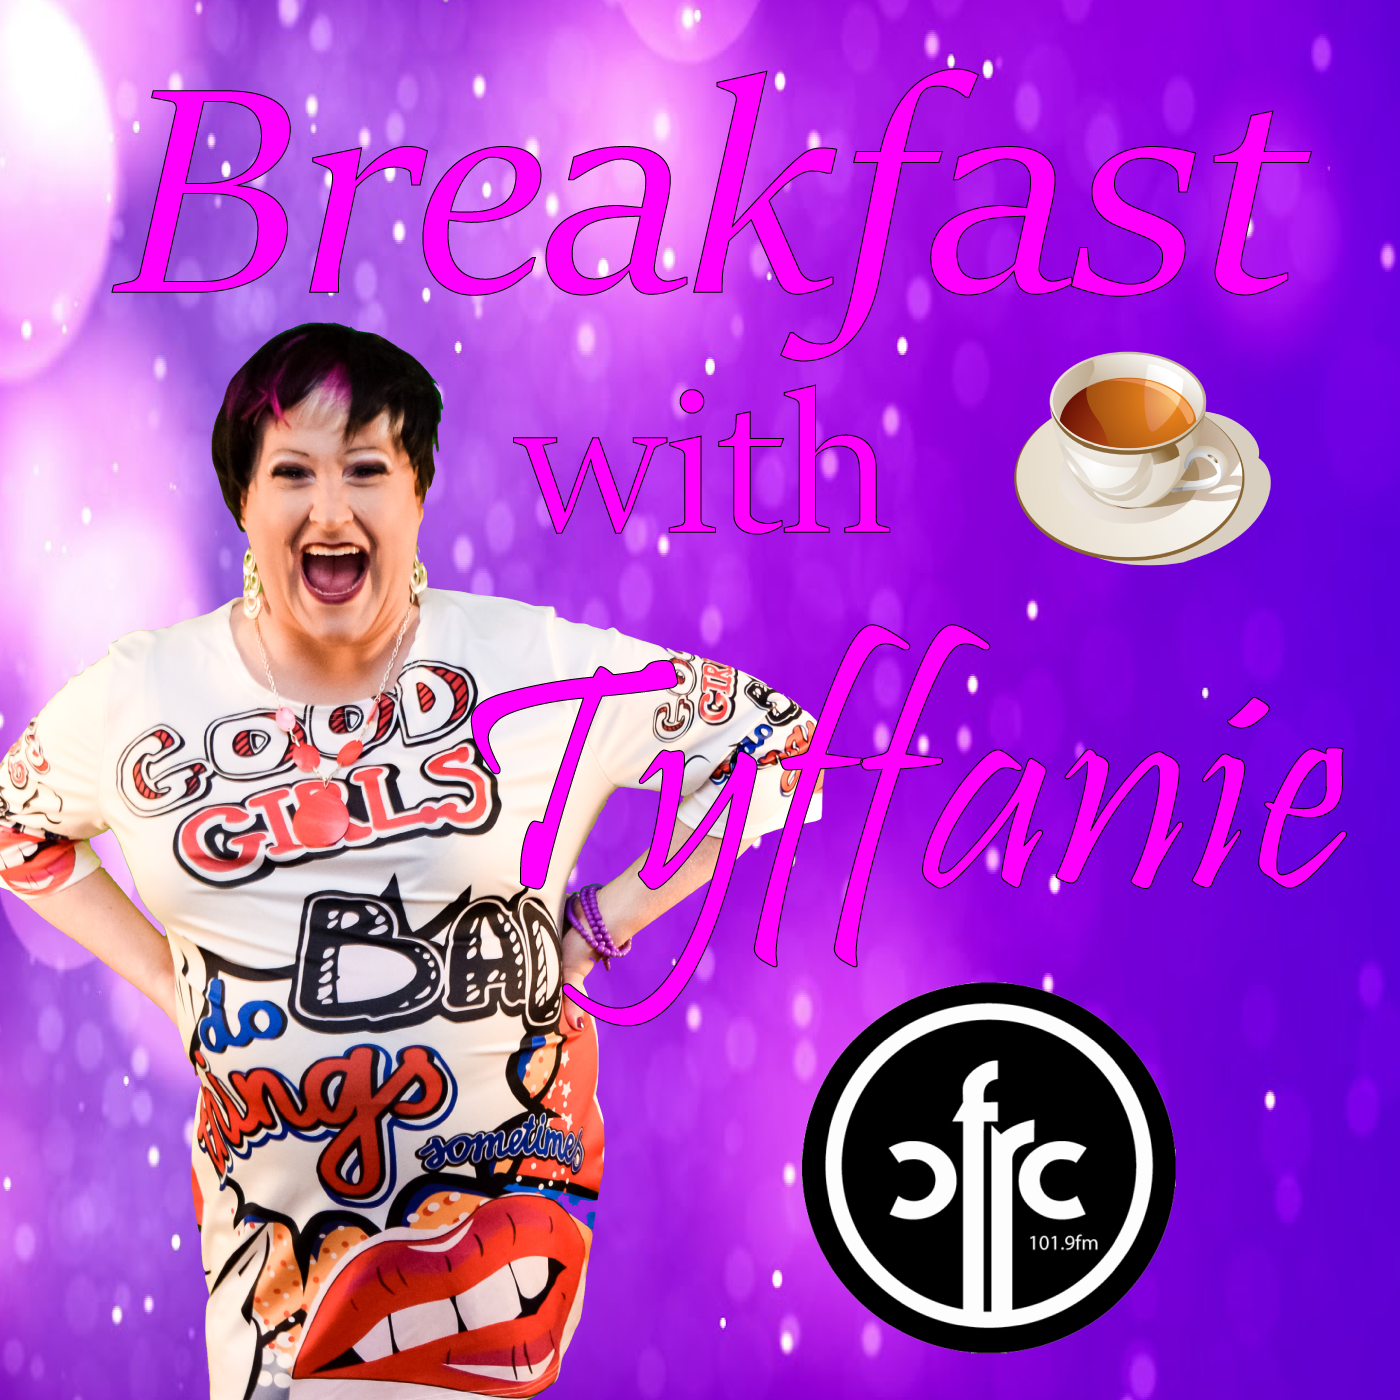 Breakfast with Tyffanie